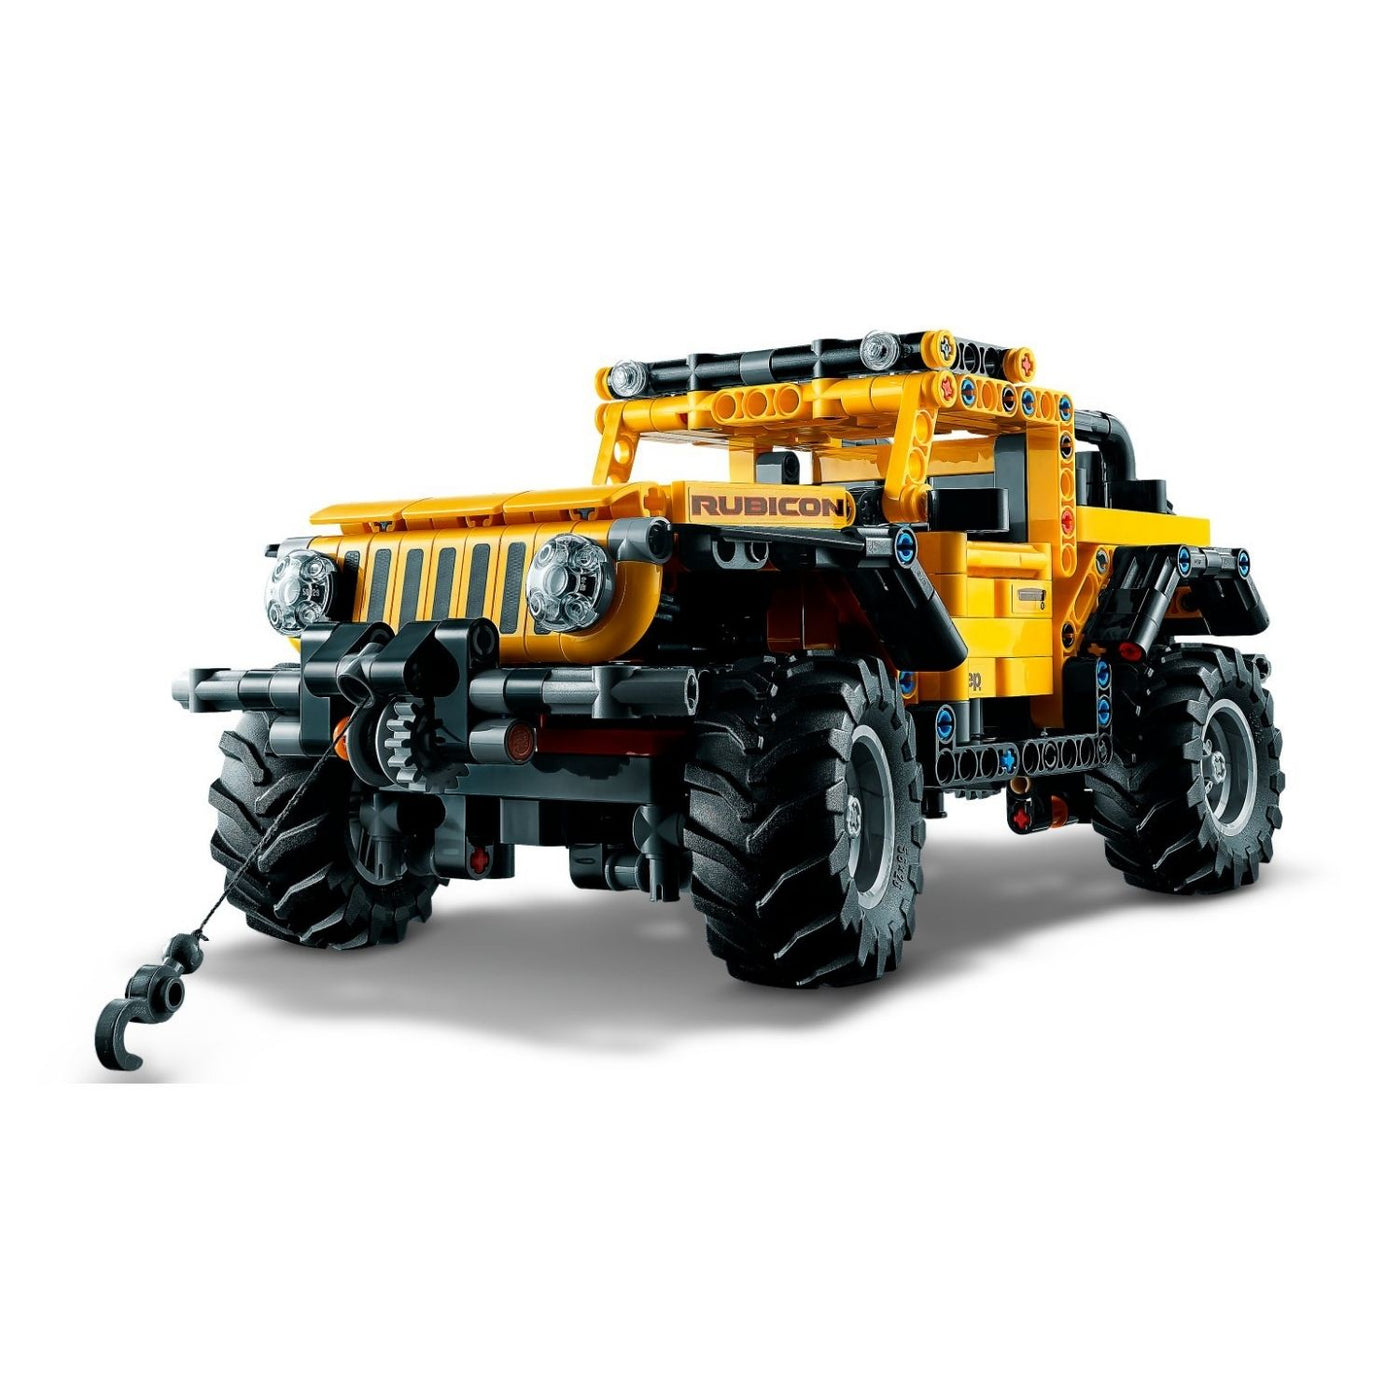 LEGO® Technic™ Jeep Wrangler 42122